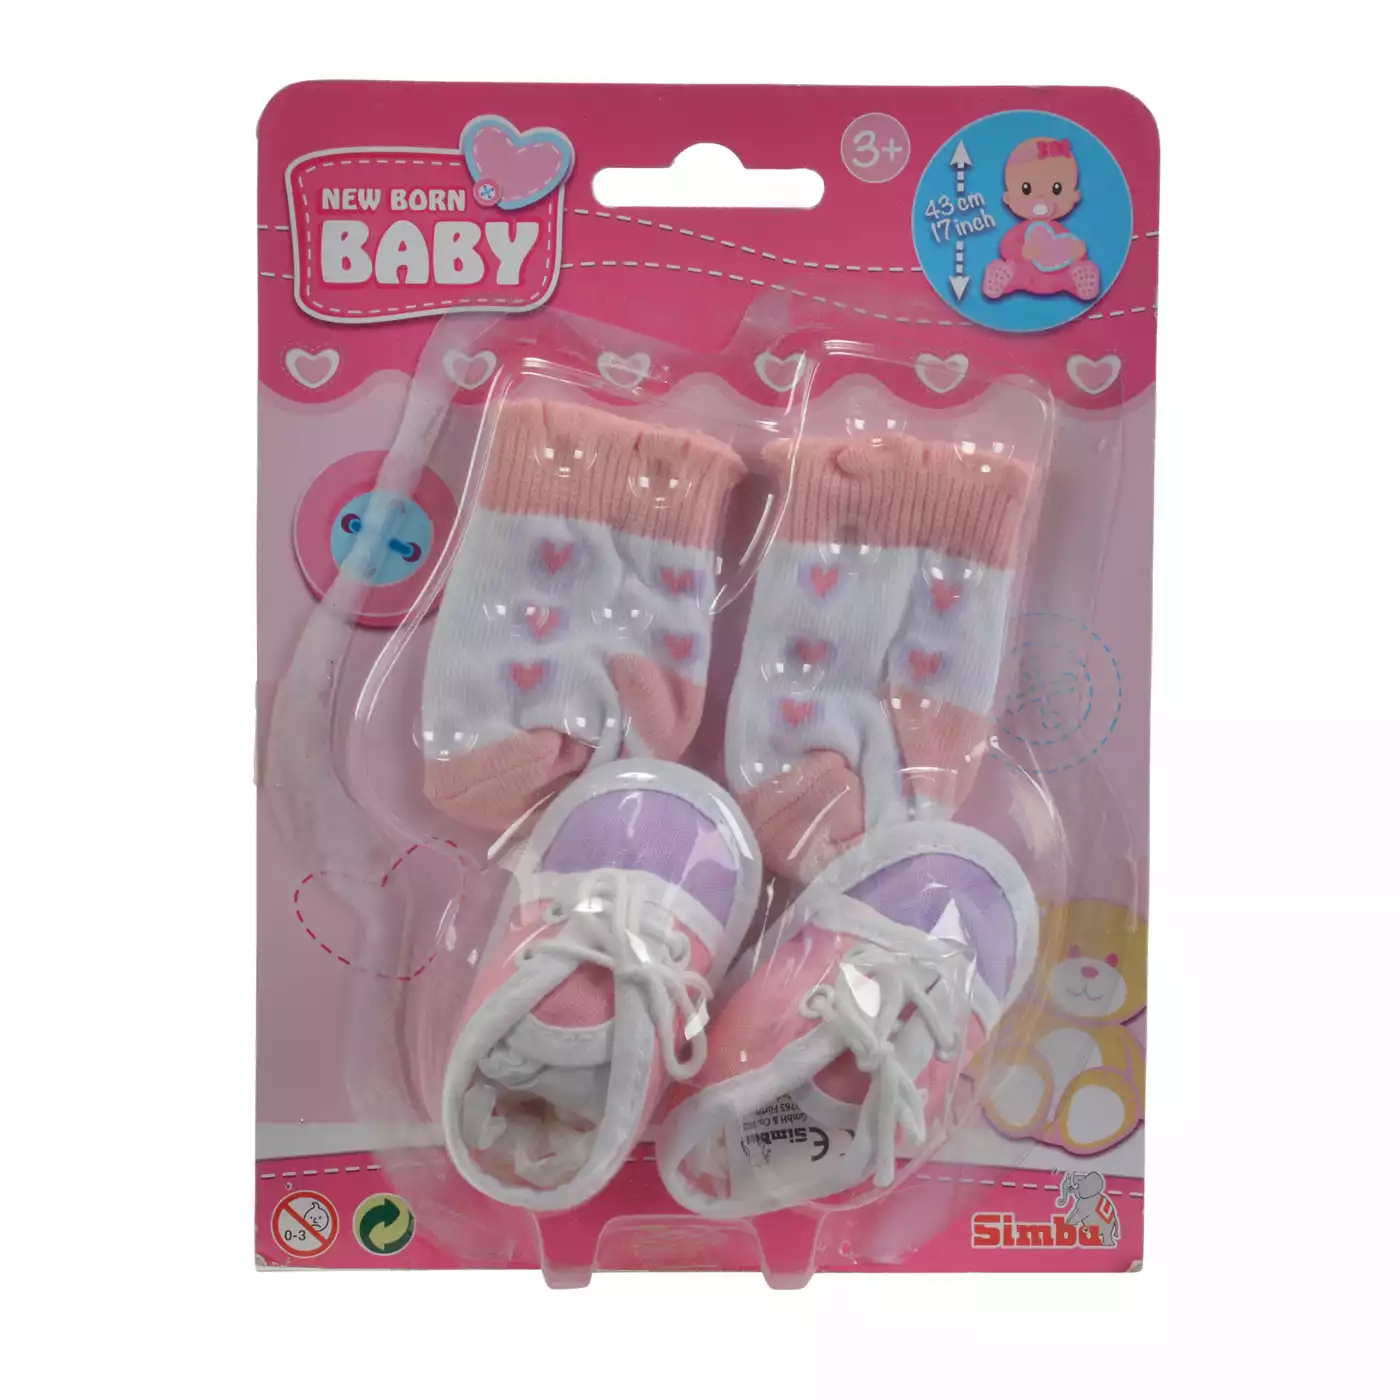 New Born Baby Schuhe und Socken Simba 2000560020904 7